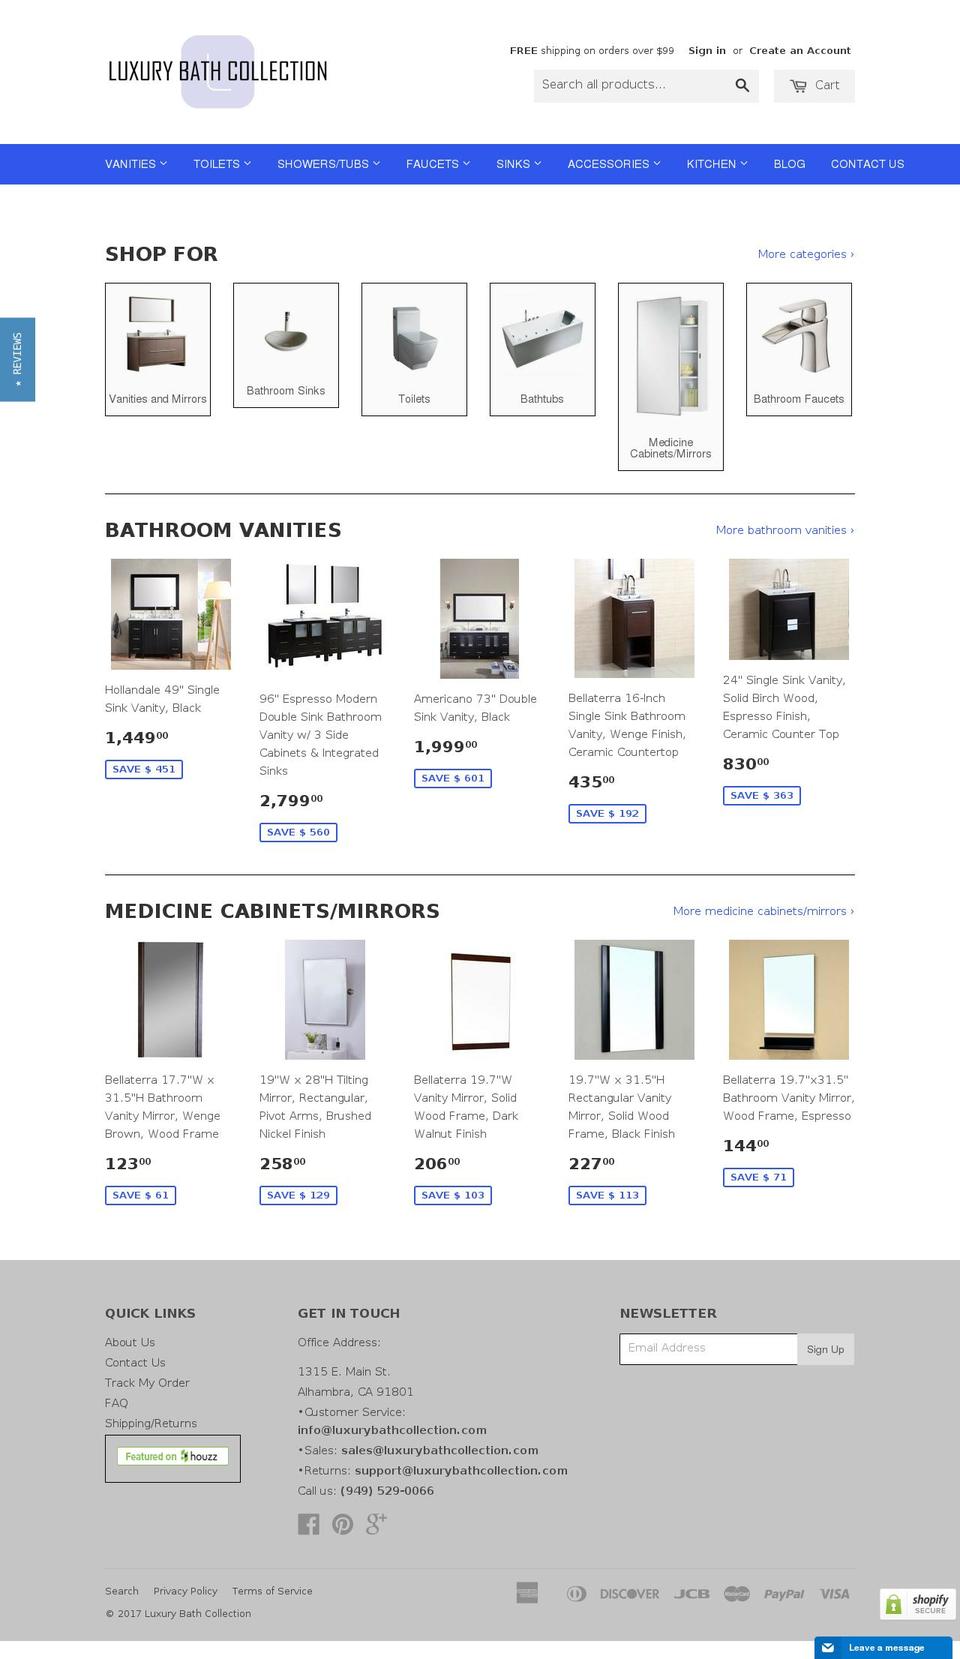 EVA Shopify theme site example luxurybathcollection.com